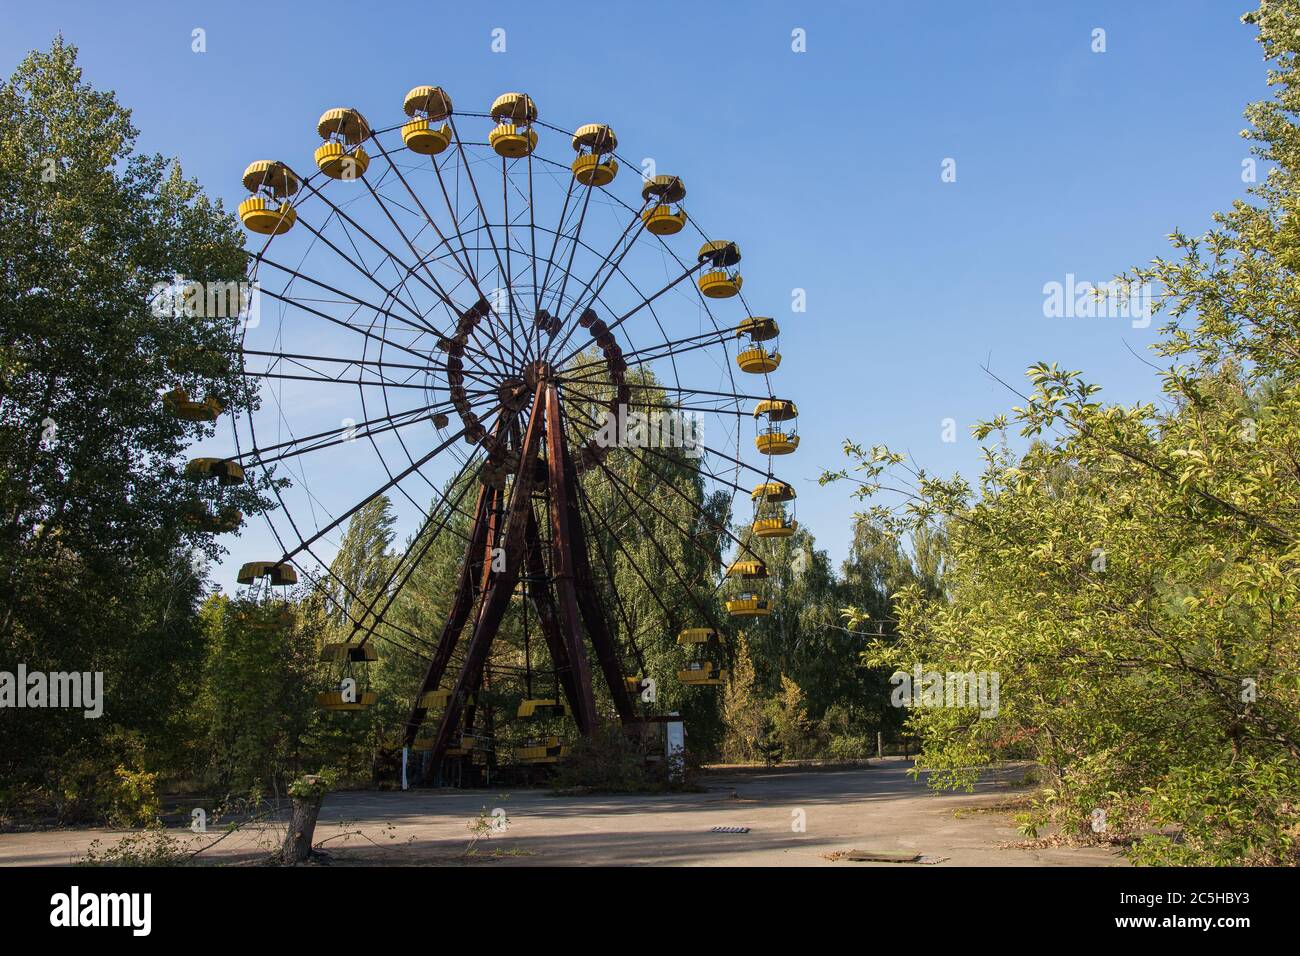 Ruota con abadonata Pipyat sulla piazza all'interno della città fantasma Foto Stock